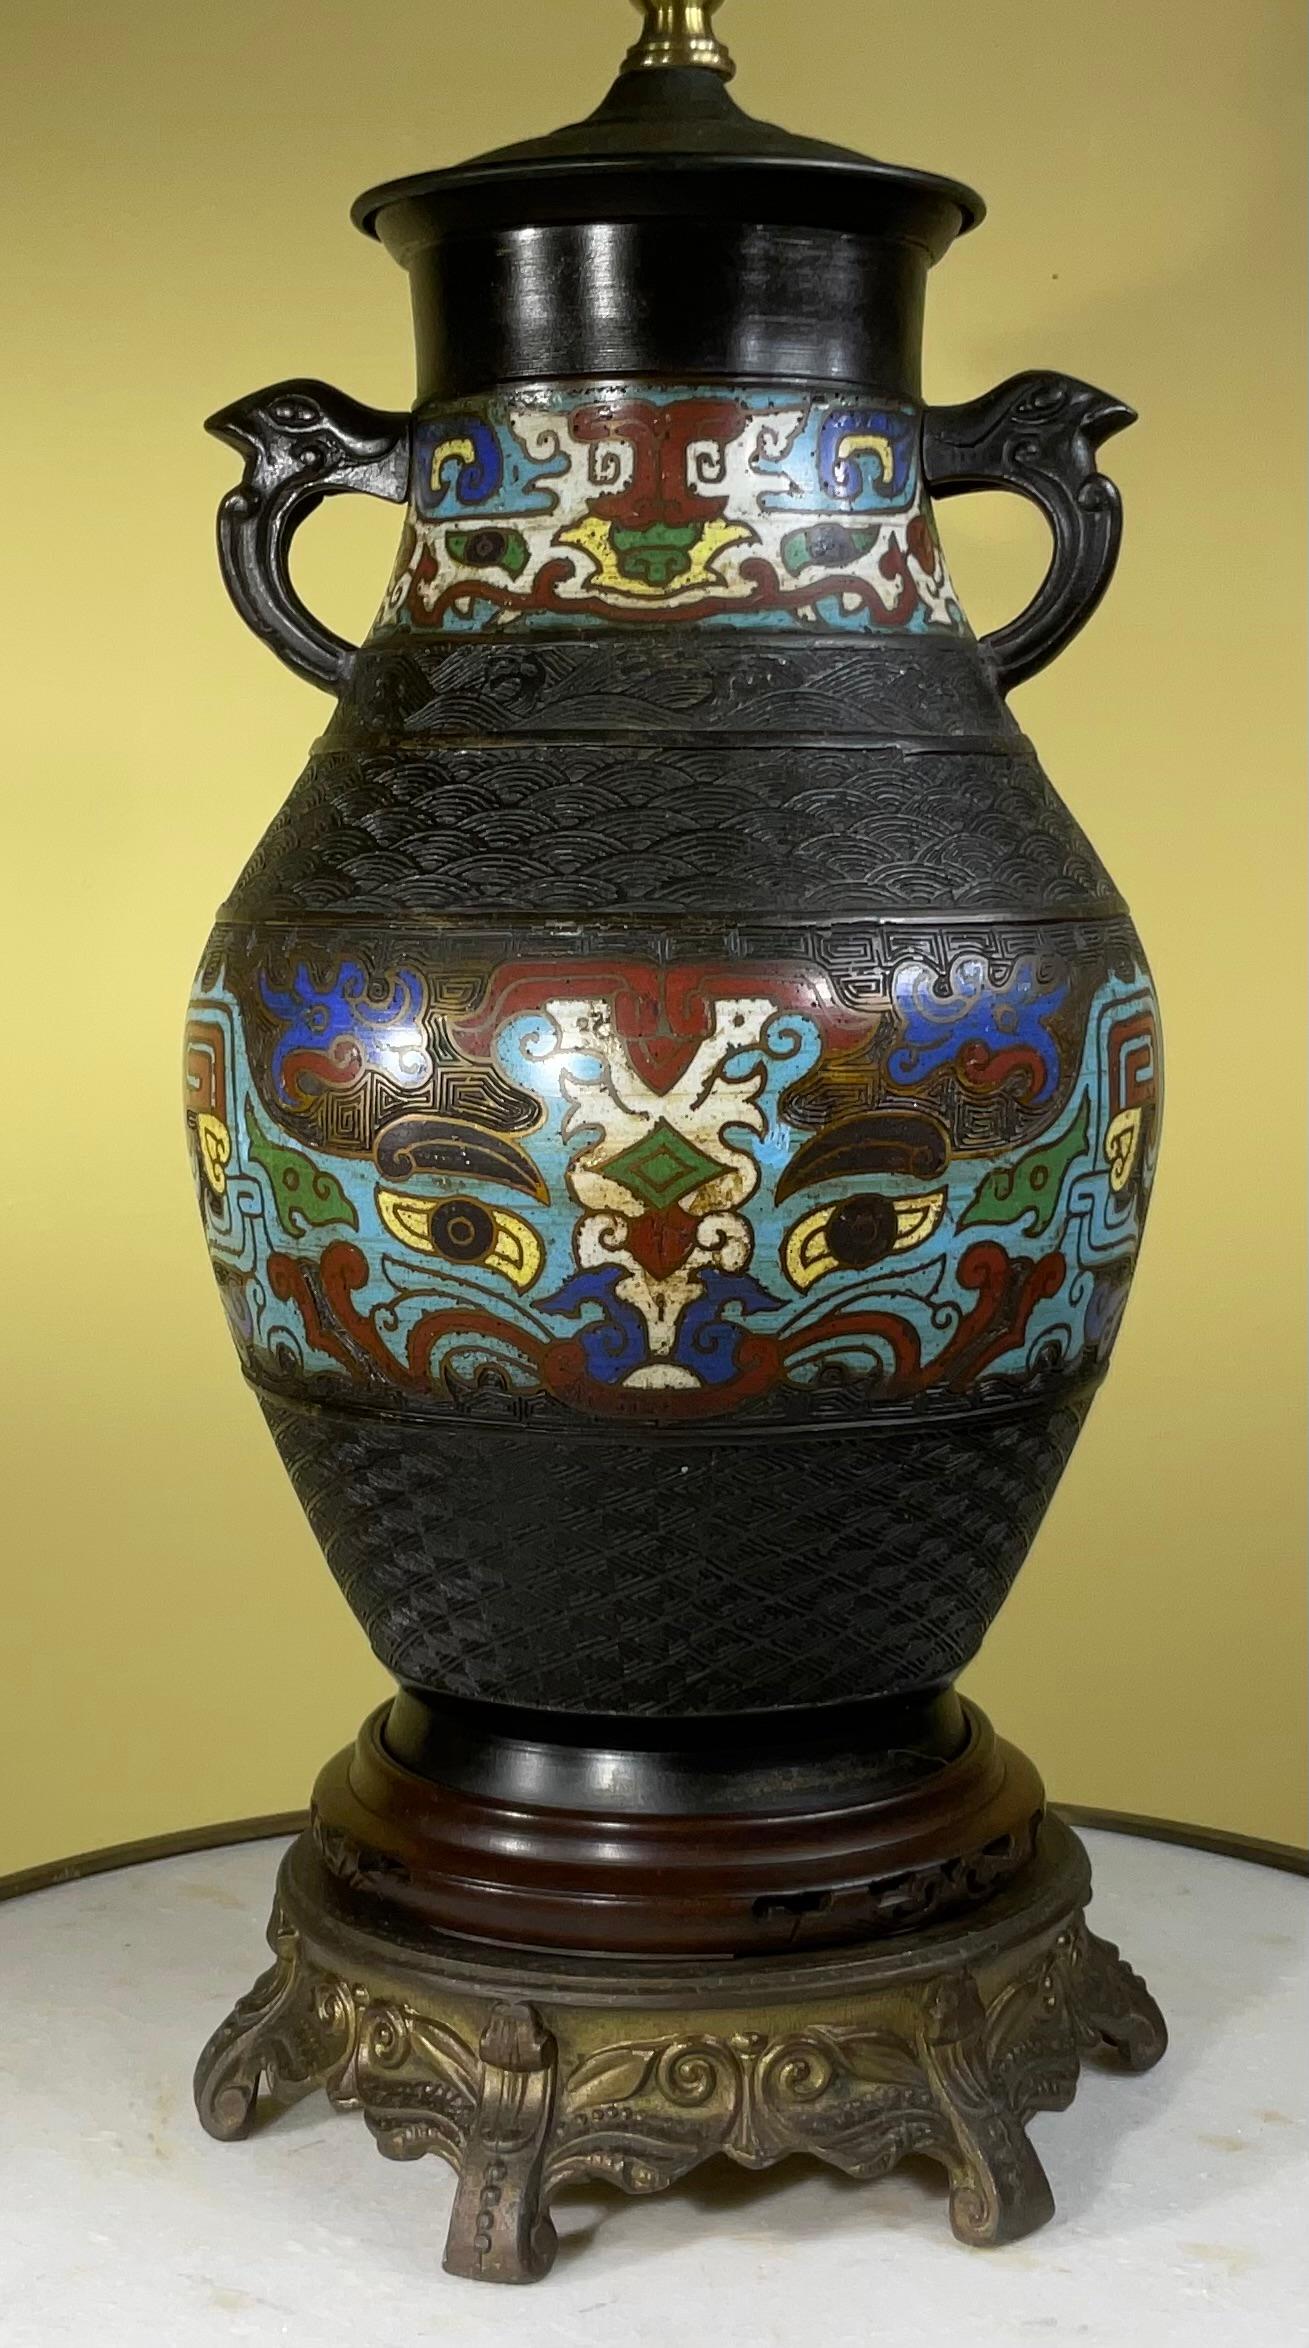 Lampe ancienne japonaise cloisonnée, vers 1910, avec incrustation d'émail bleu, blanc de vin et turquoise sur un vase en bronze, montée sur une base ronde en bois sculpté à la main avec une base secondaire en métal doré, nouvellement électrifiée et